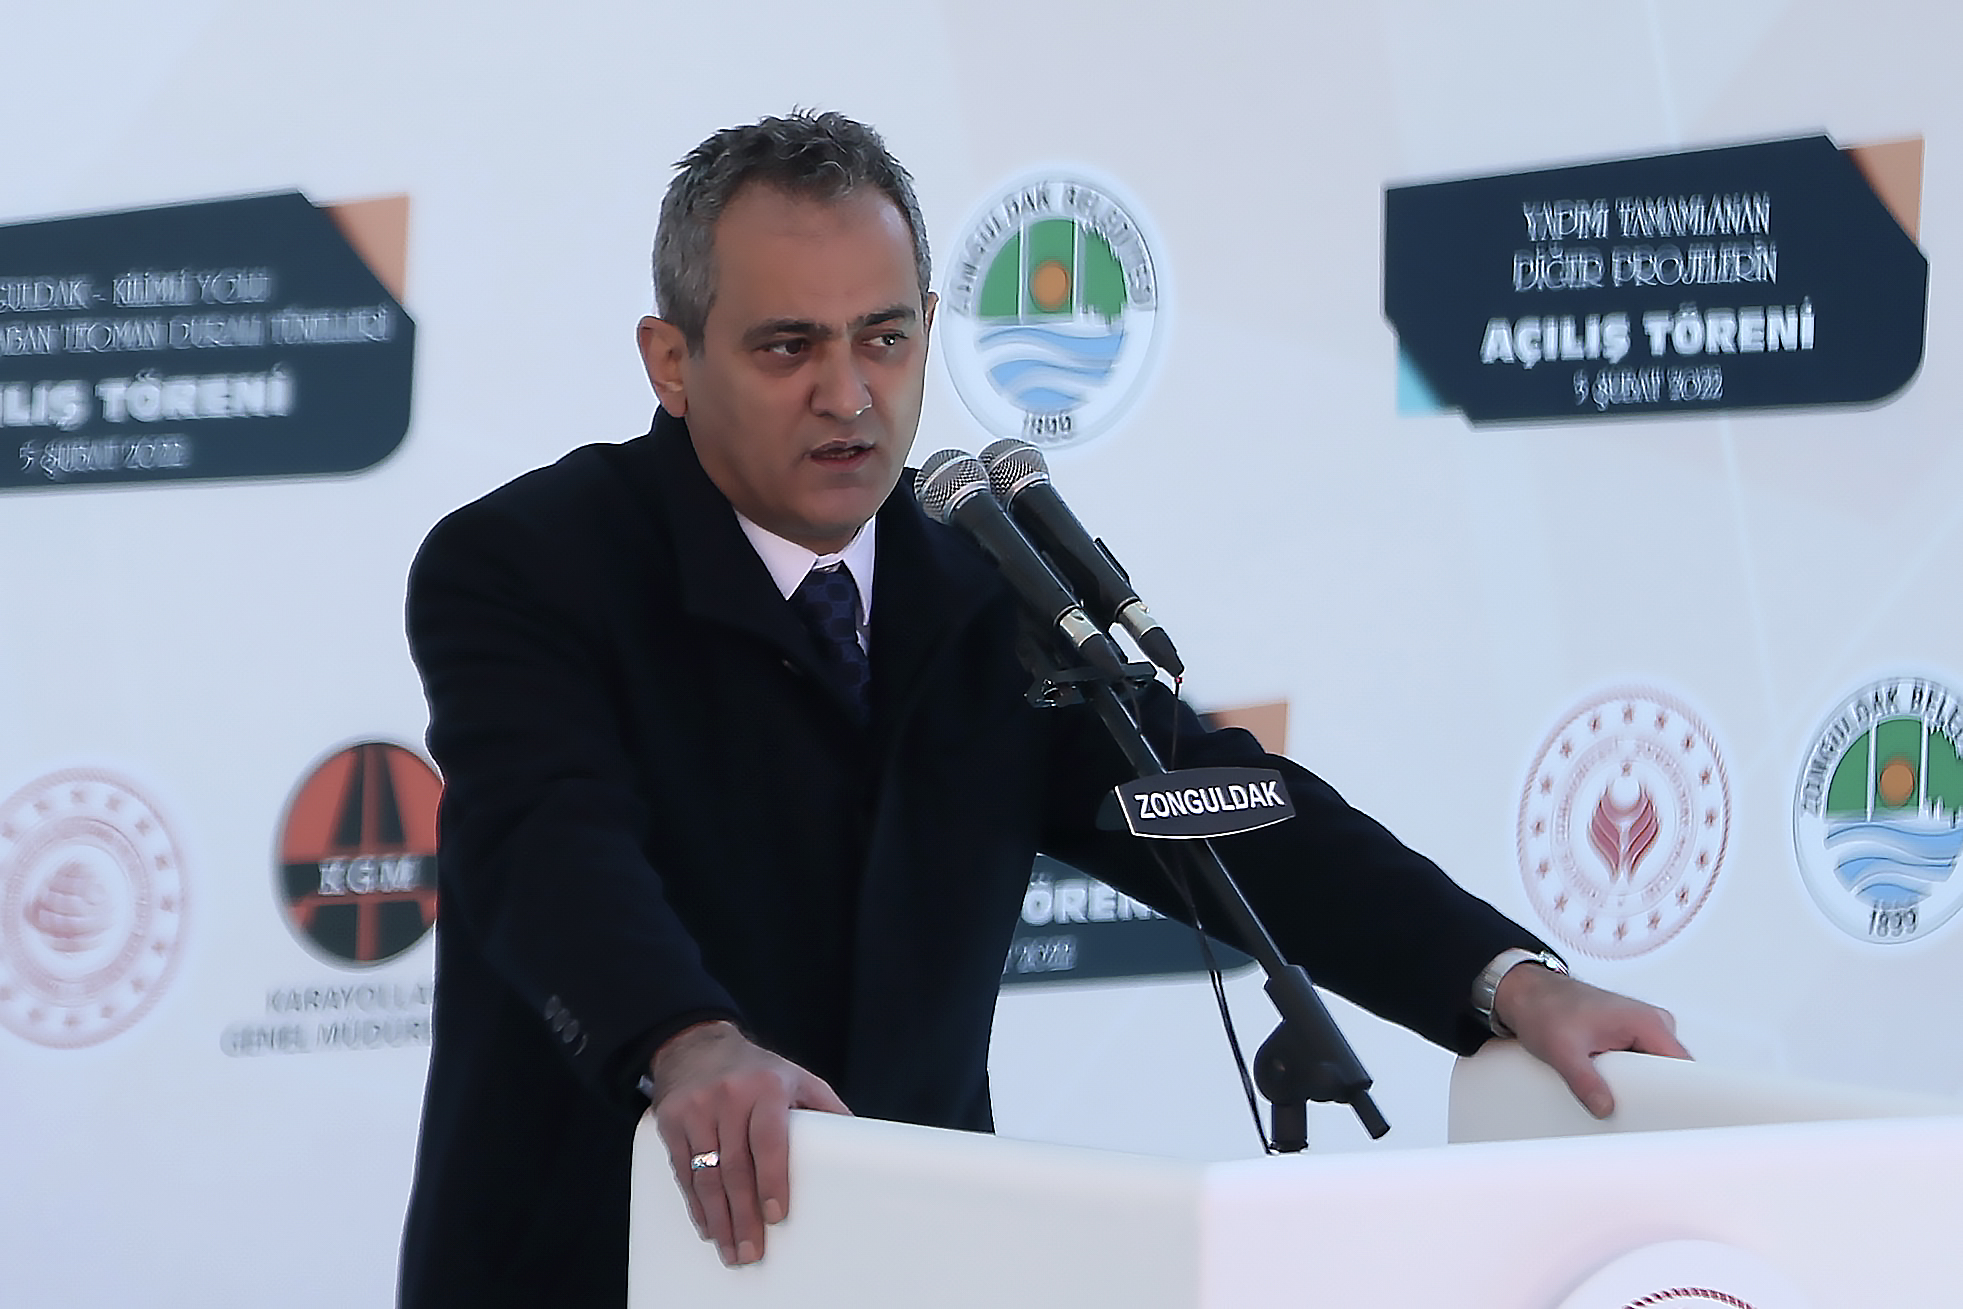 Bakan Mahmut Özer, Zonguldak’taki toplu açılış töreninde konuştu: